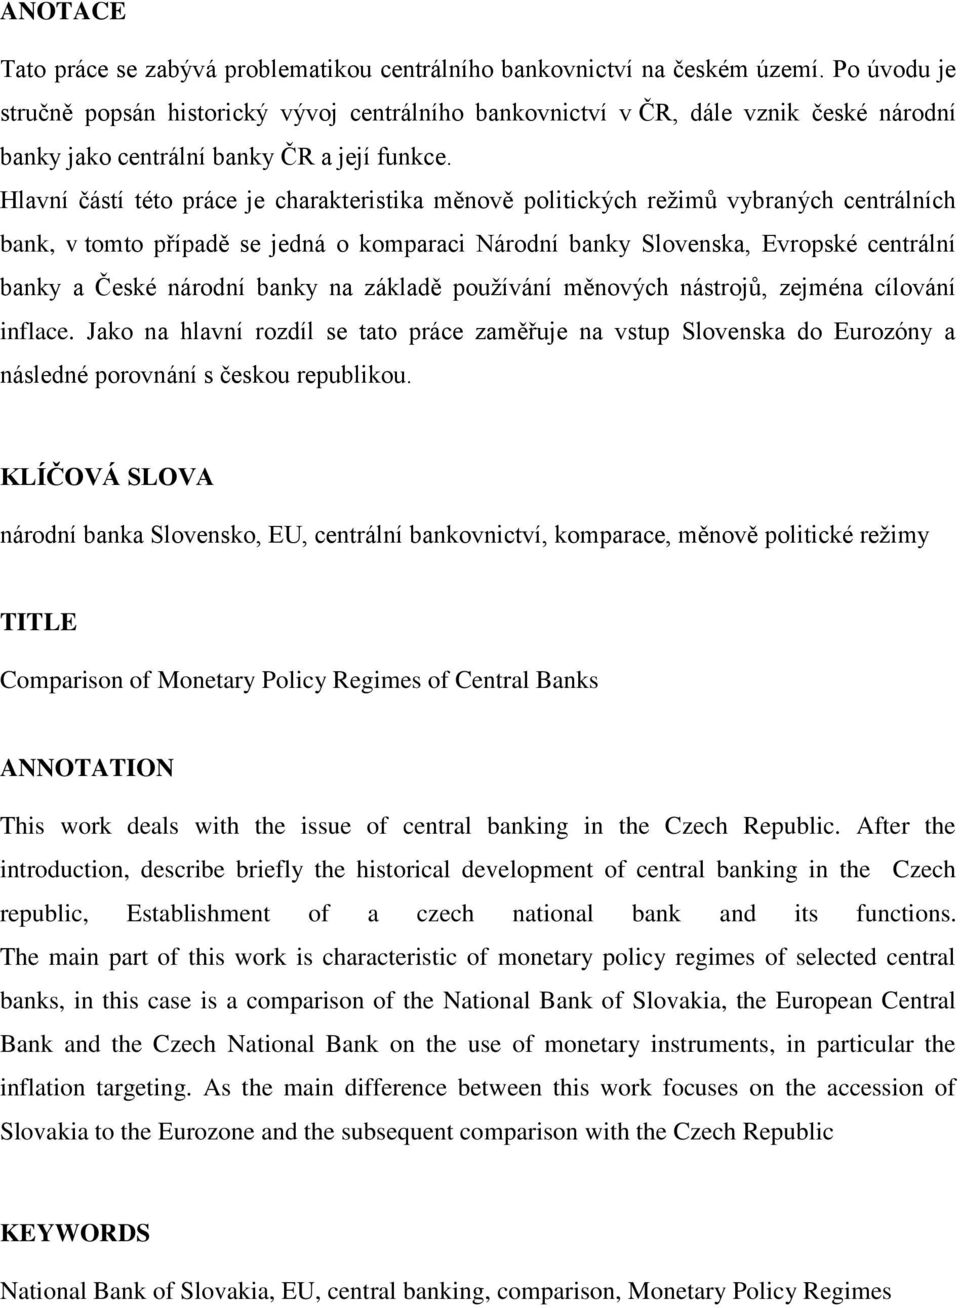 Hlavní částí této práce je charakteristika měnově politických reţimů vybraných centrálních bank, v tomto případě se jedná o komparaci Národní banky Slovenska, Evropské centrální banky a České národní